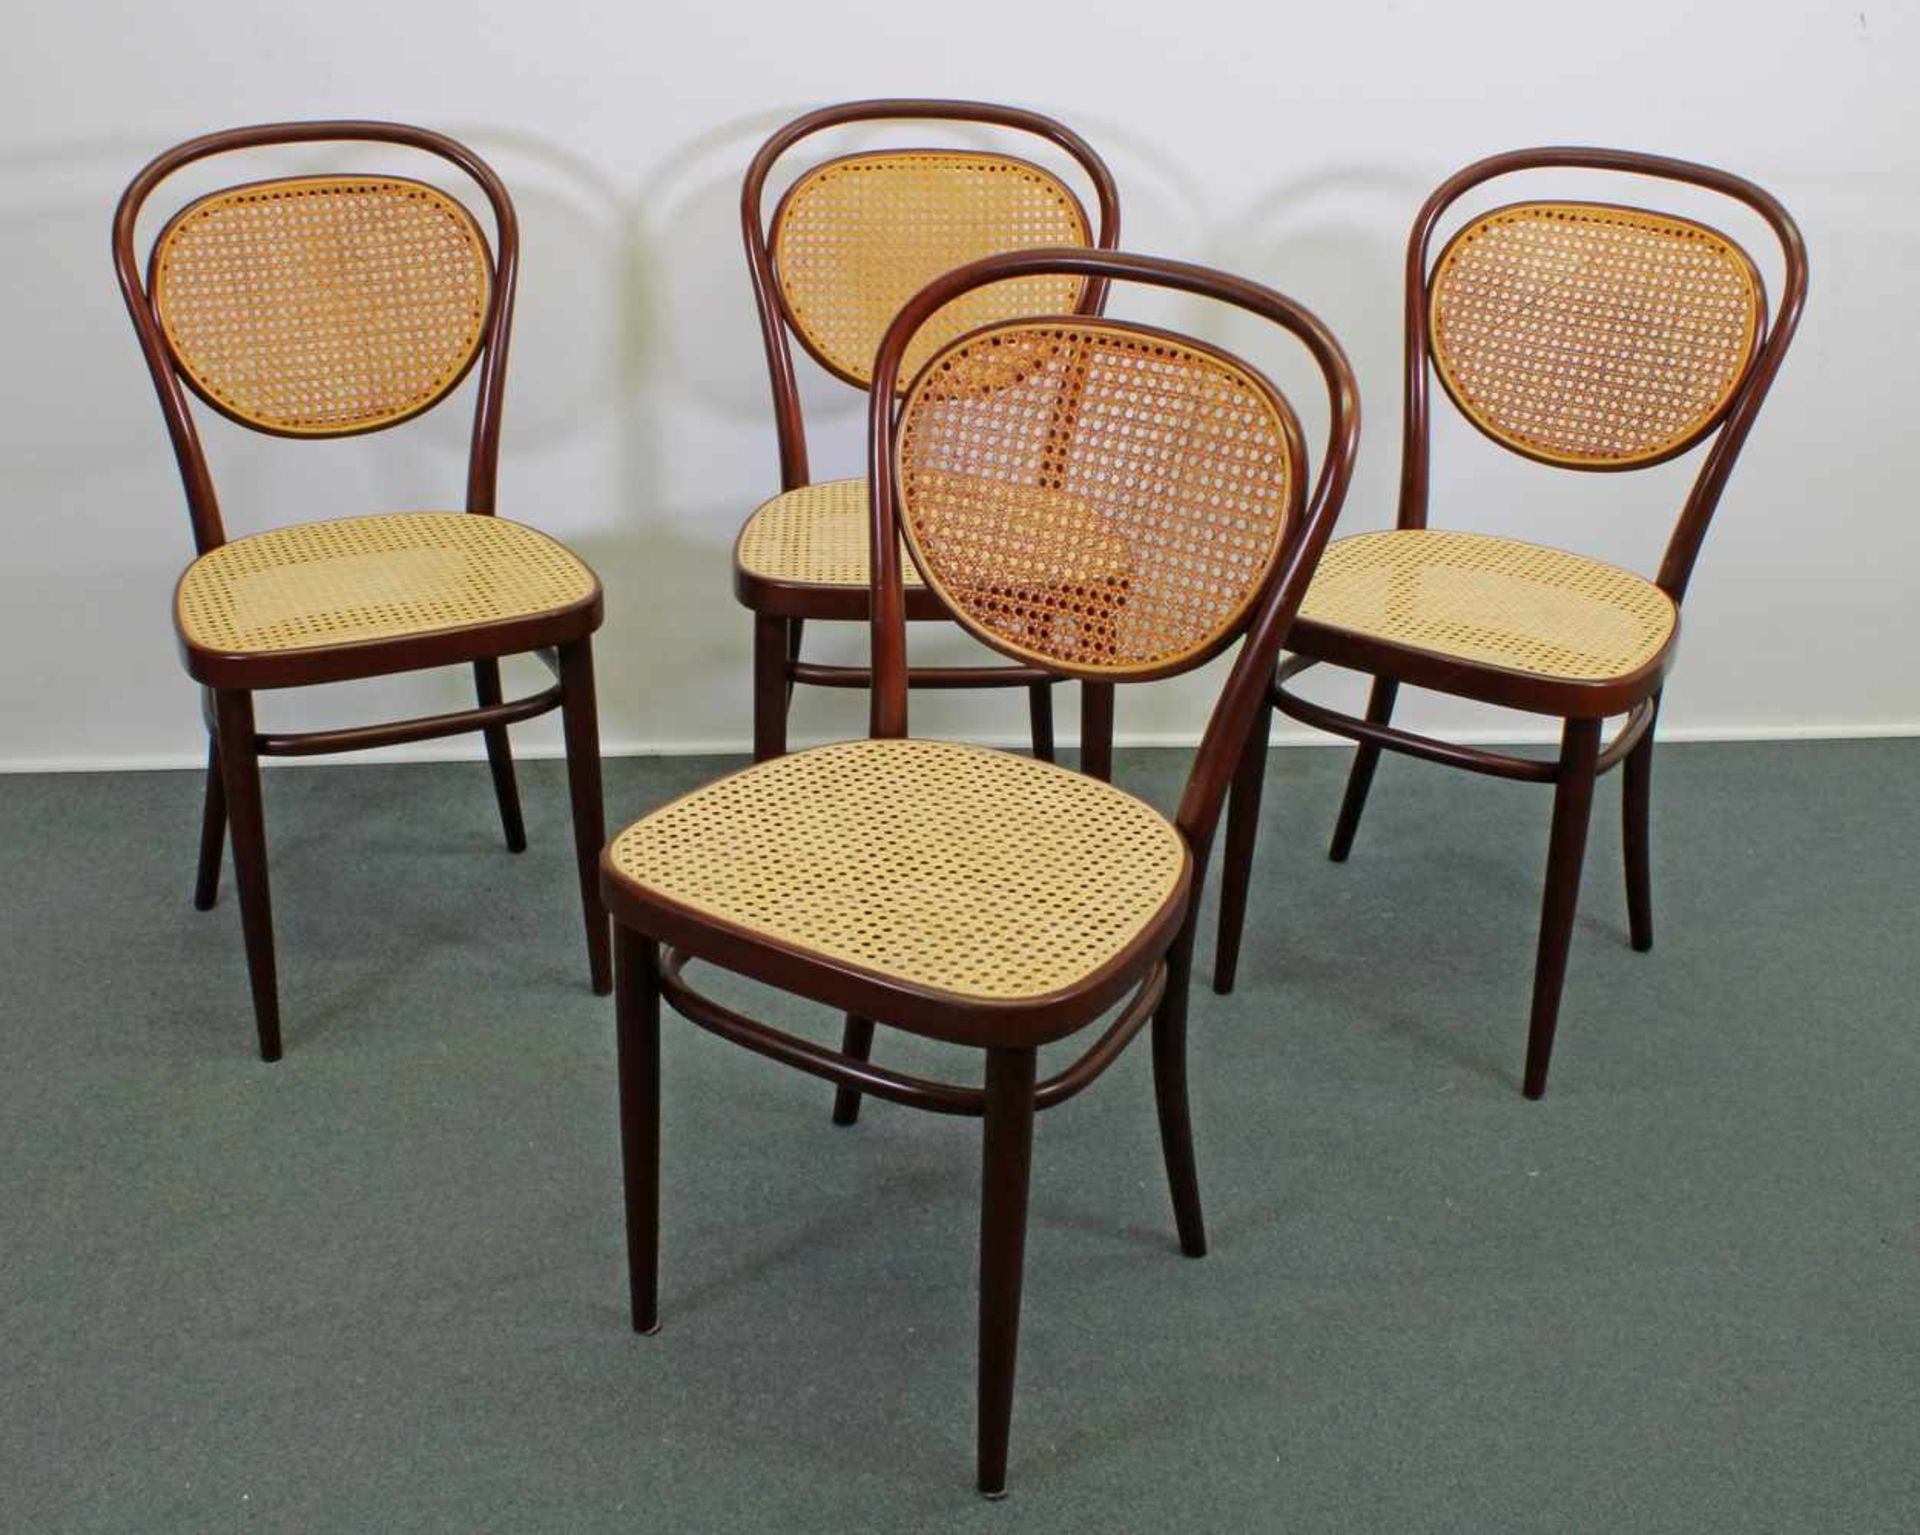 4 Kaffeehausstühle, Thonet, 1980er Jahre, Buchenbugholz, braun, Sitz und Rückenlehne mit Geflecht,